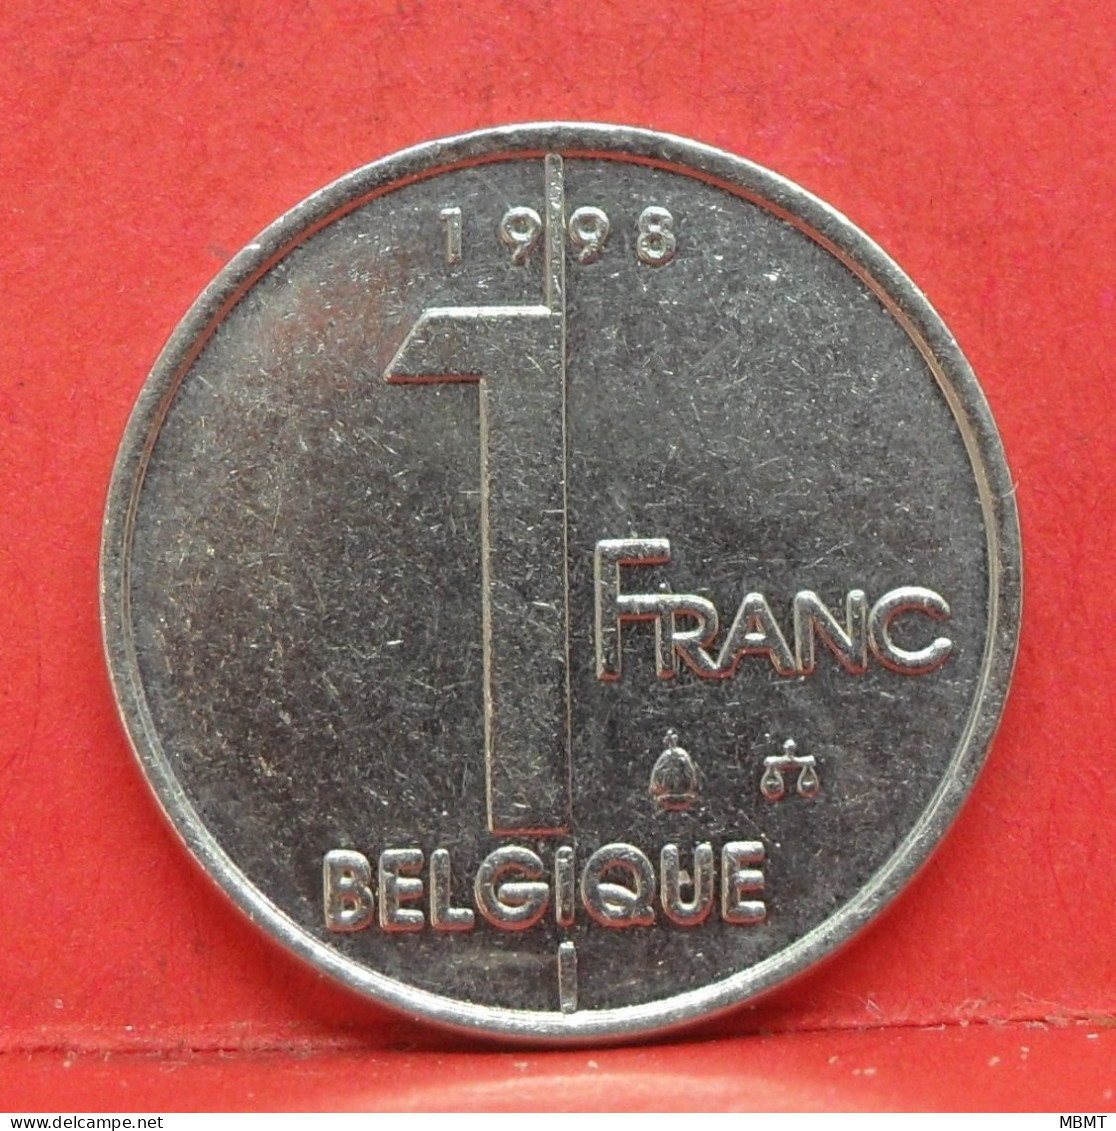 1 Franc 1998 - TTB - Pièce Monnaie Belgique - Article N°1800 - 1 Franc